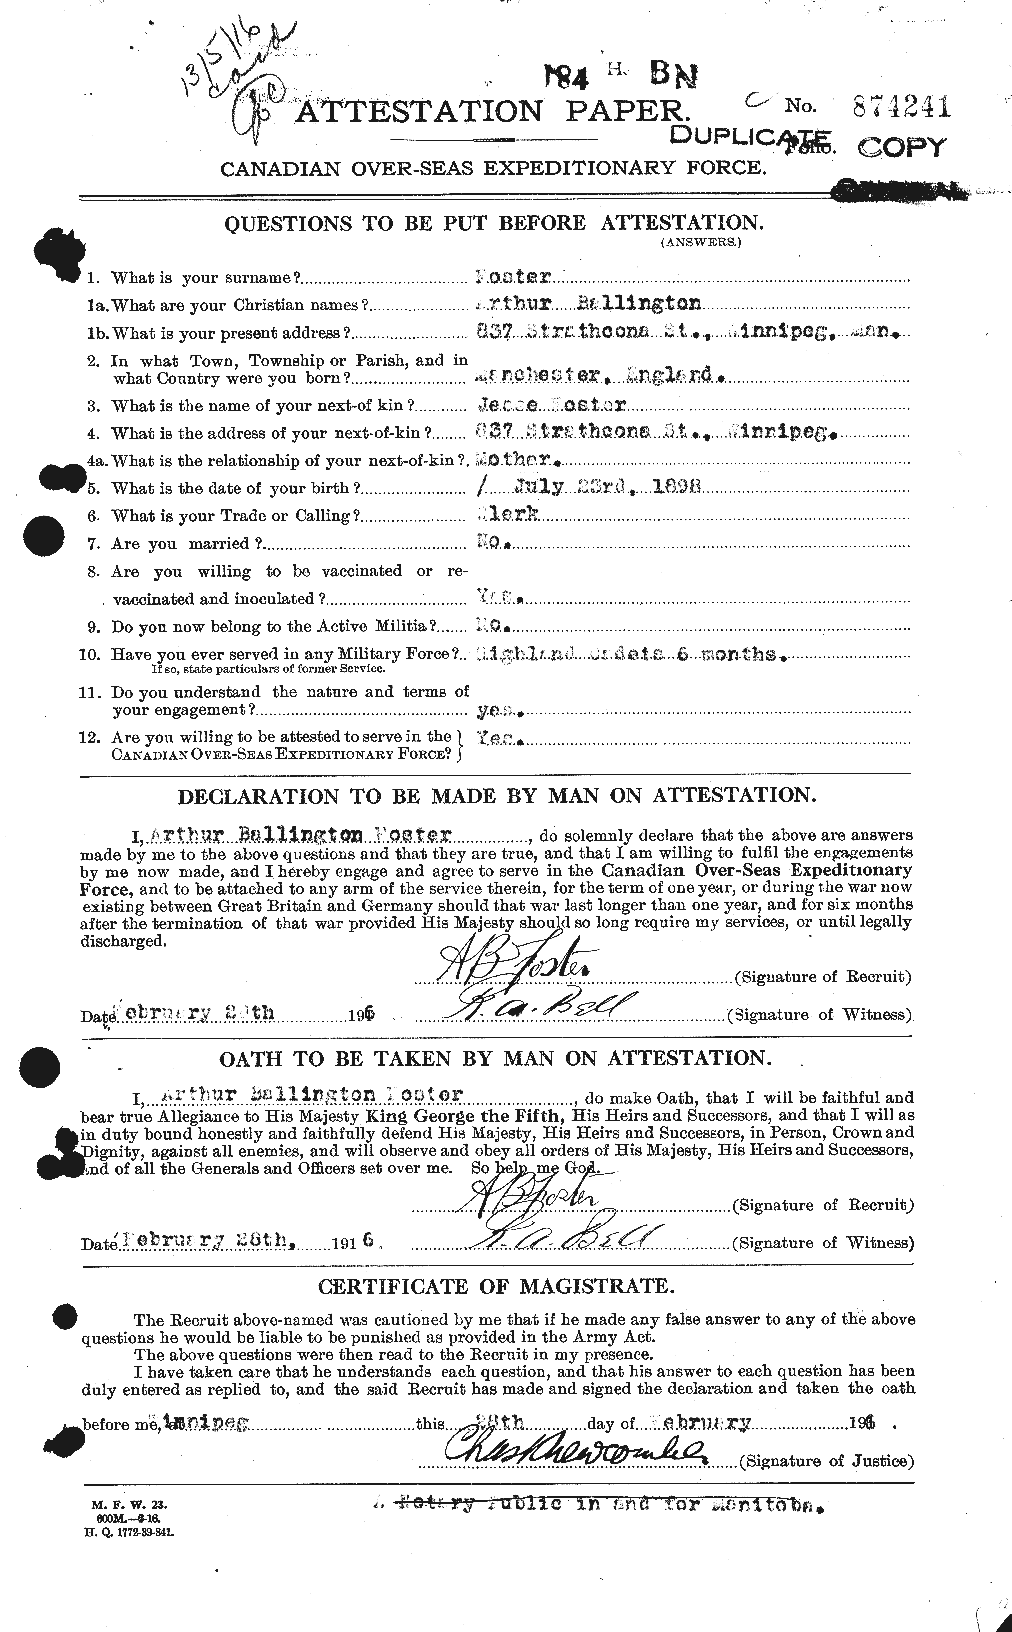 Dossiers du Personnel de la Première Guerre mondiale - CEC 330469a